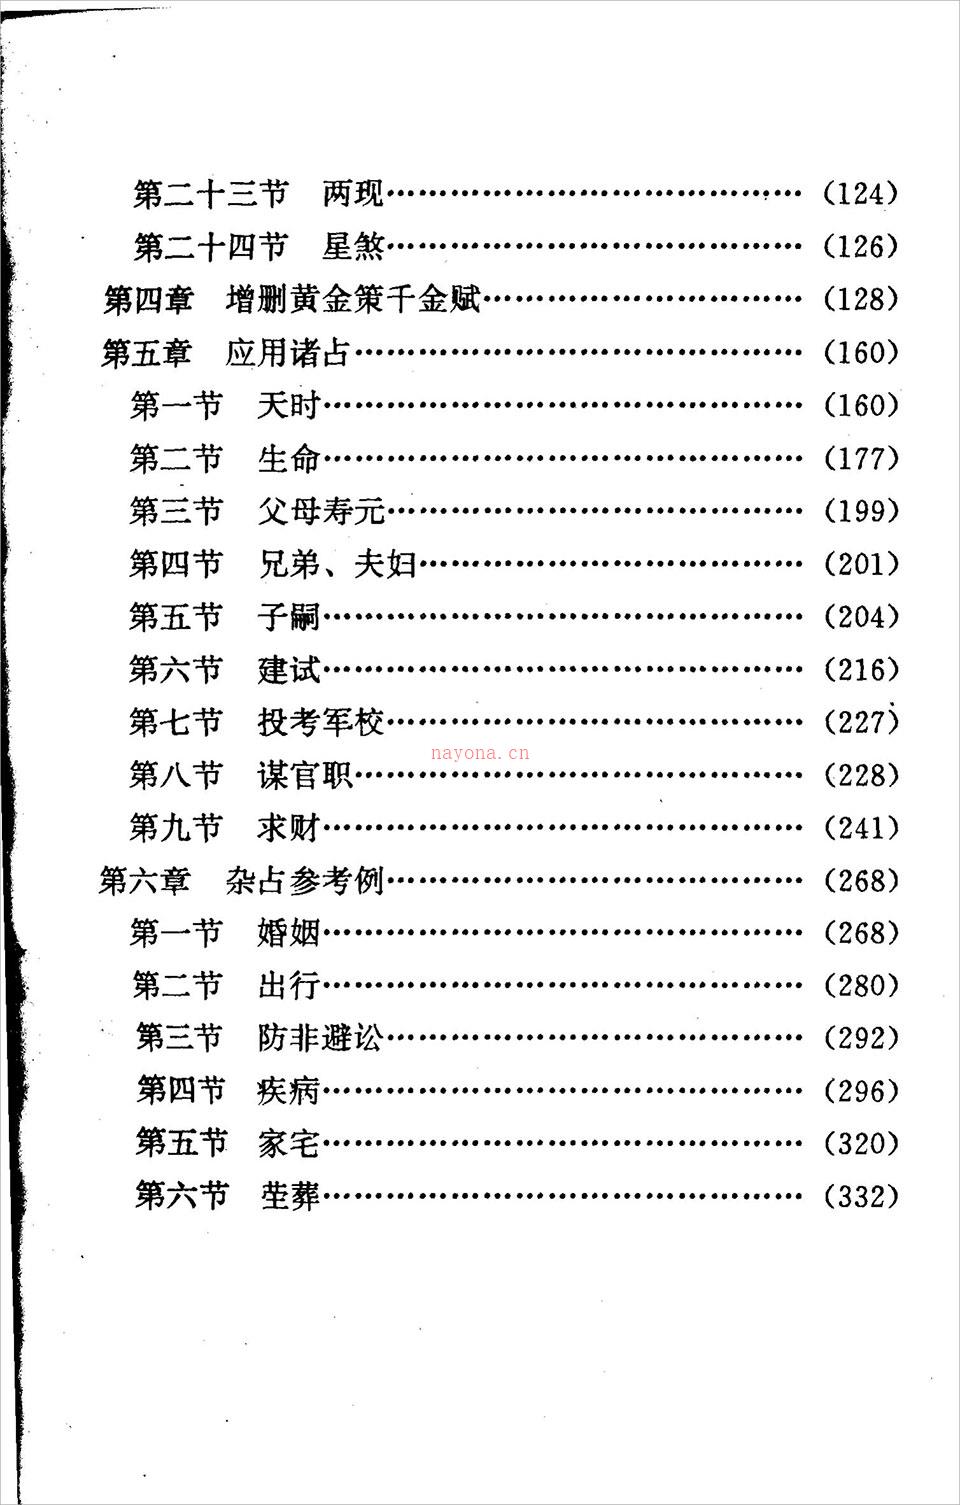 邵伟华-周易探秘《卜易预测学》358页.pdf 百度网盘资源